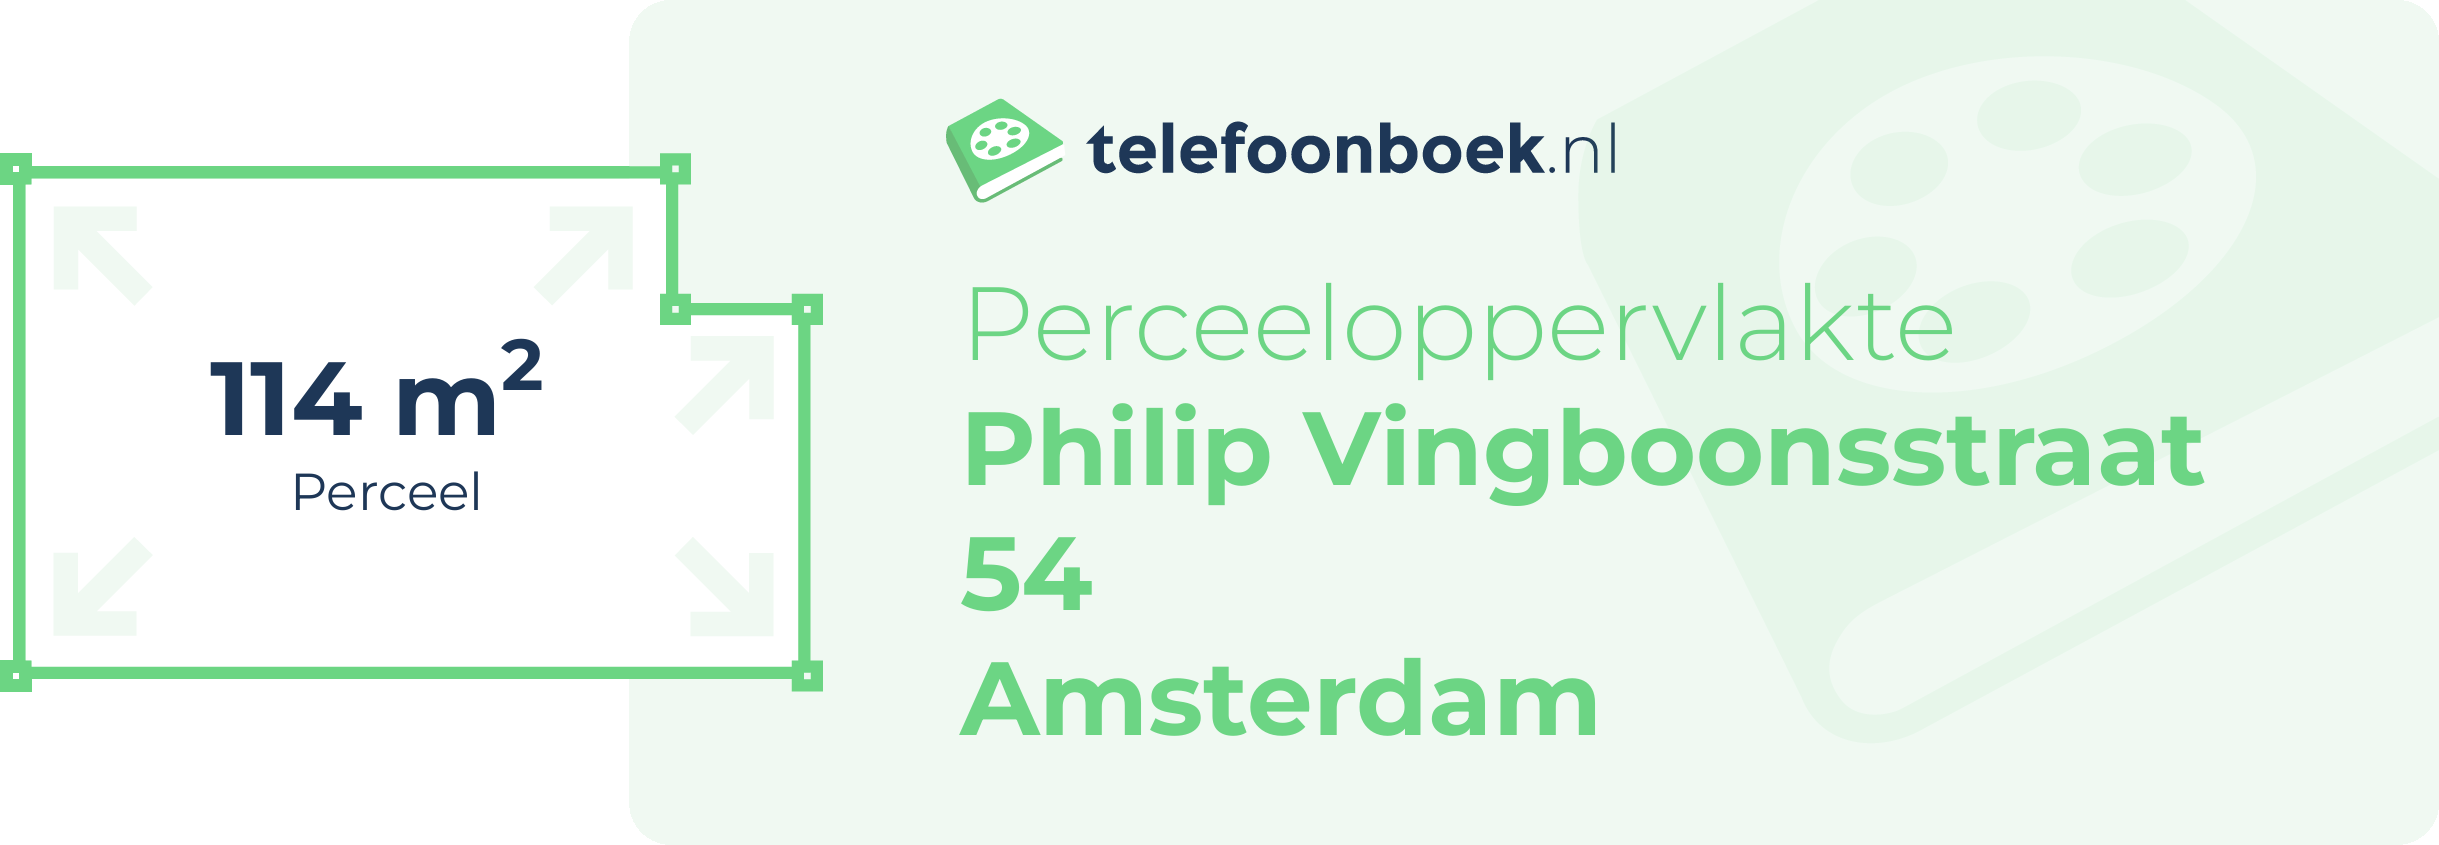 Perceeloppervlakte Philip Vingboonsstraat 54 Amsterdam